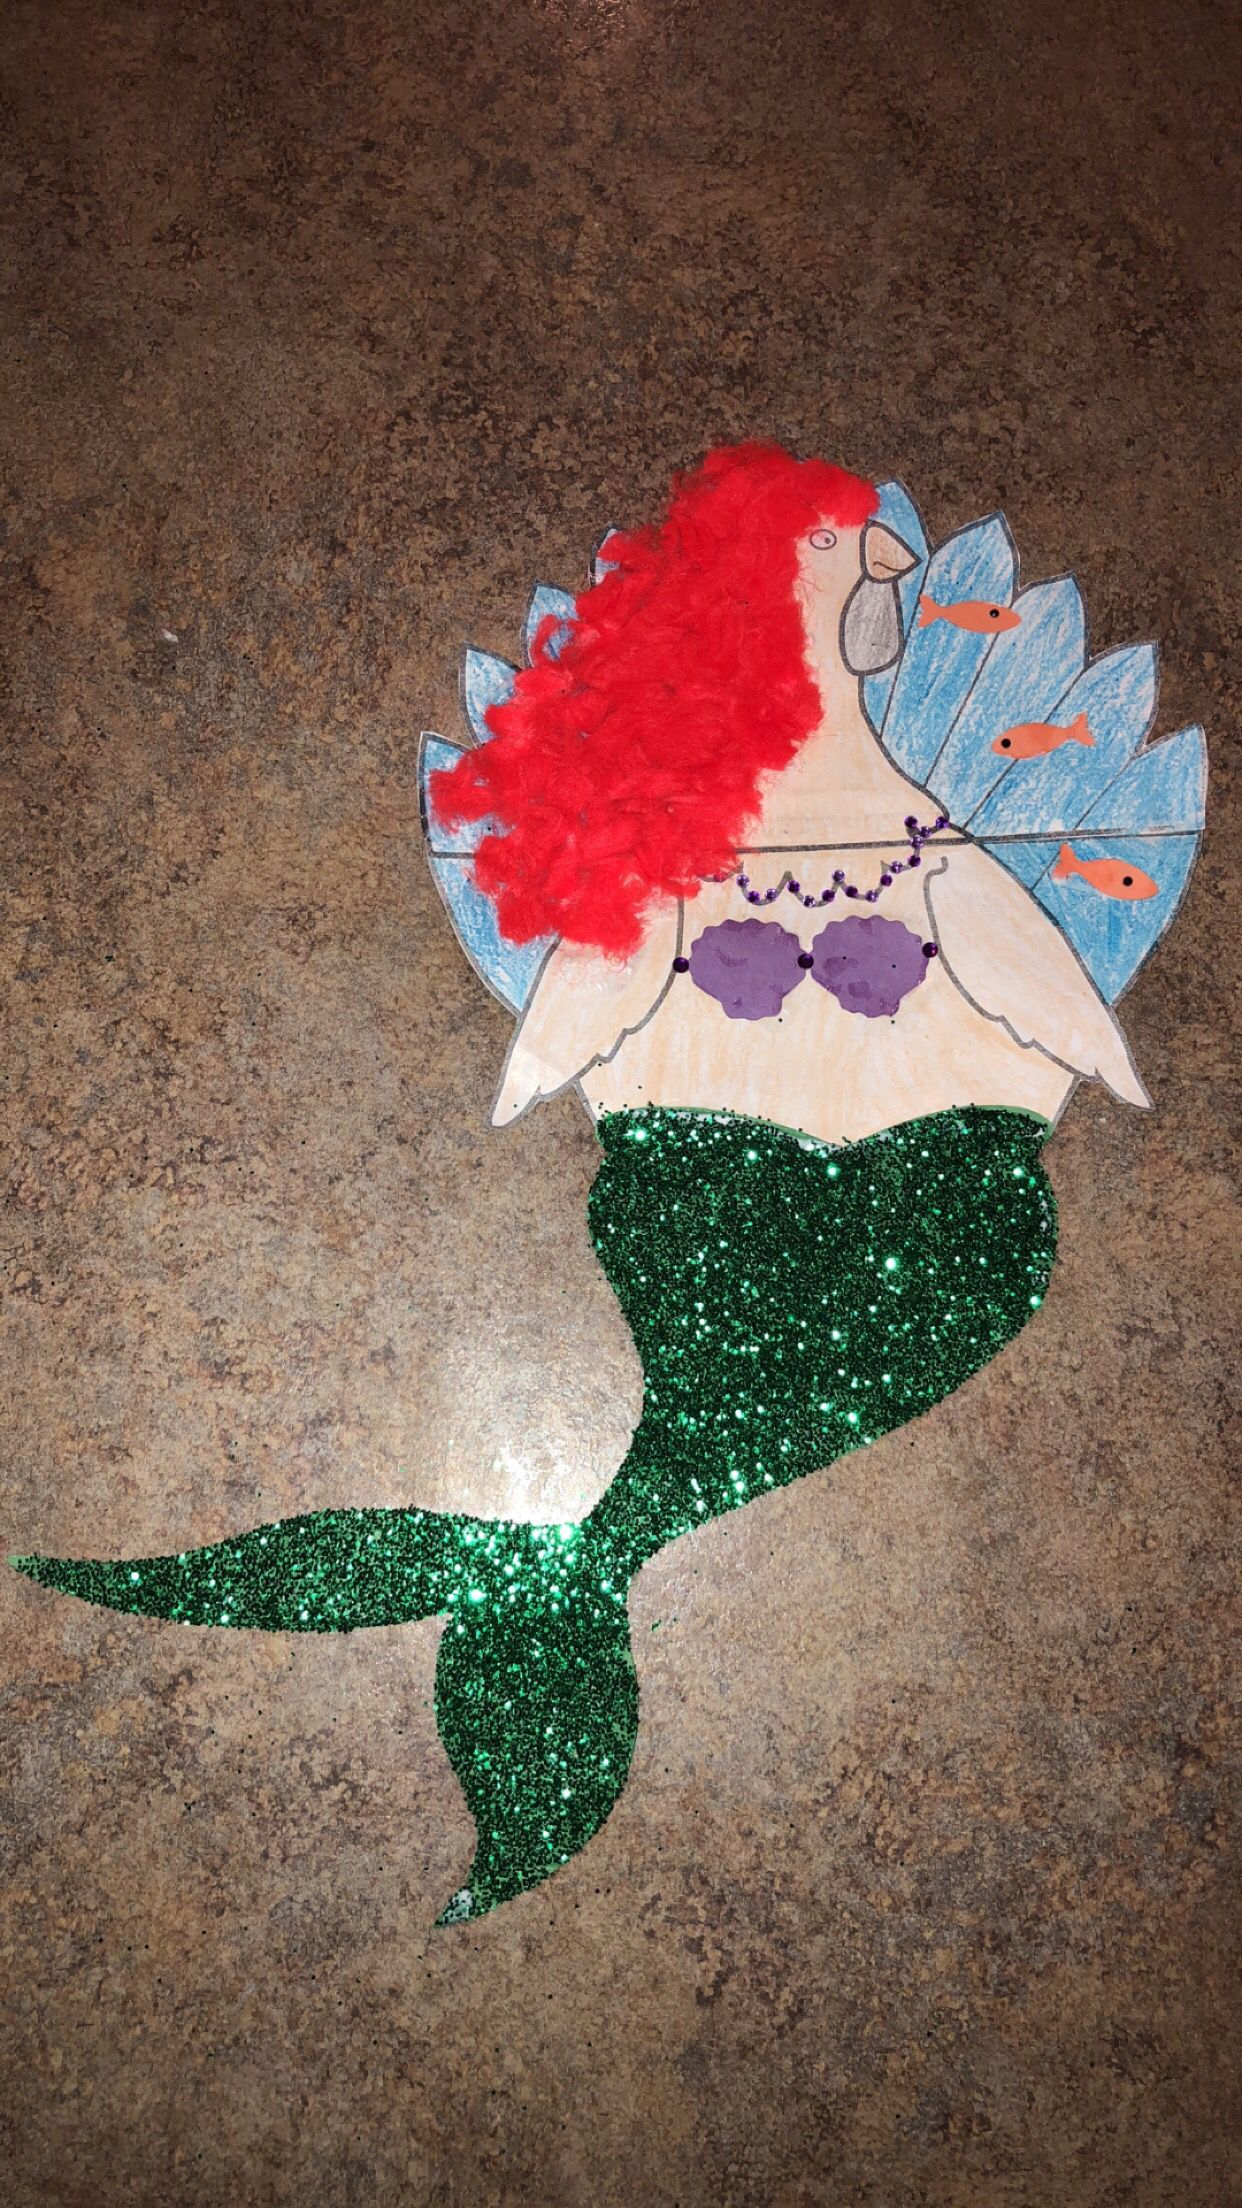 Disguise Turkey Project - Disguise Turkey Project -   13 mermaid turkey disguise project ideas